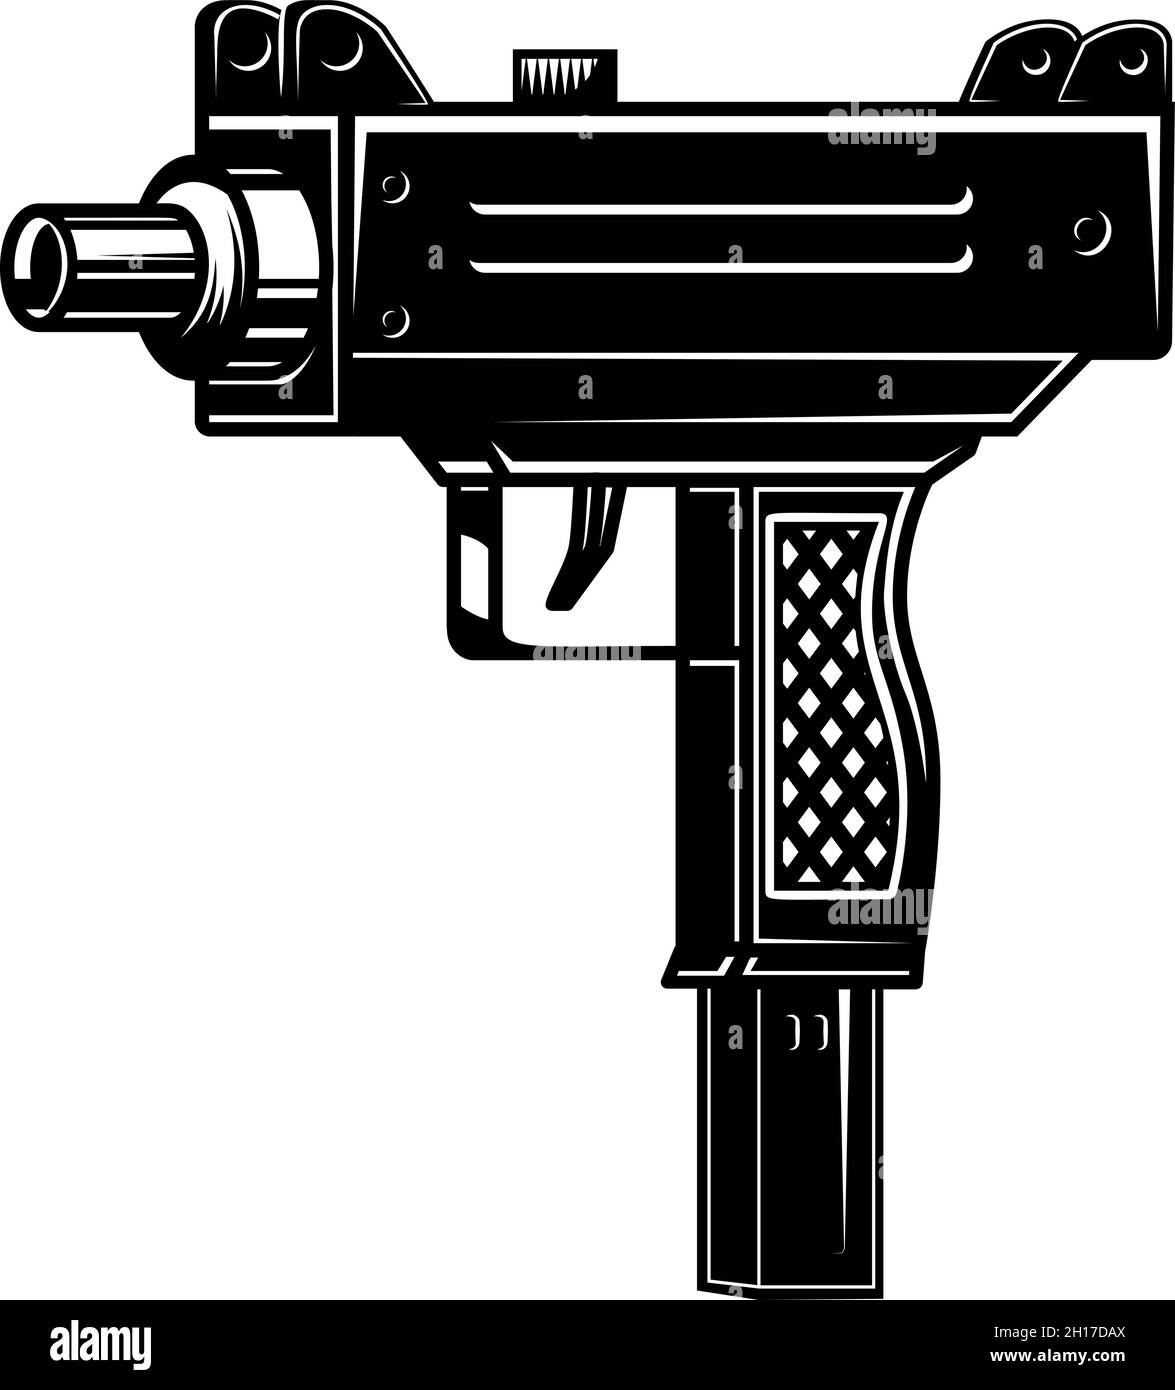 Illustrazione della pistola automatica uzi in stile monocromatico. Elemento di design per logo, etichetta, cartello, poster. Illustrazione vettoriale Illustrazione Vettoriale